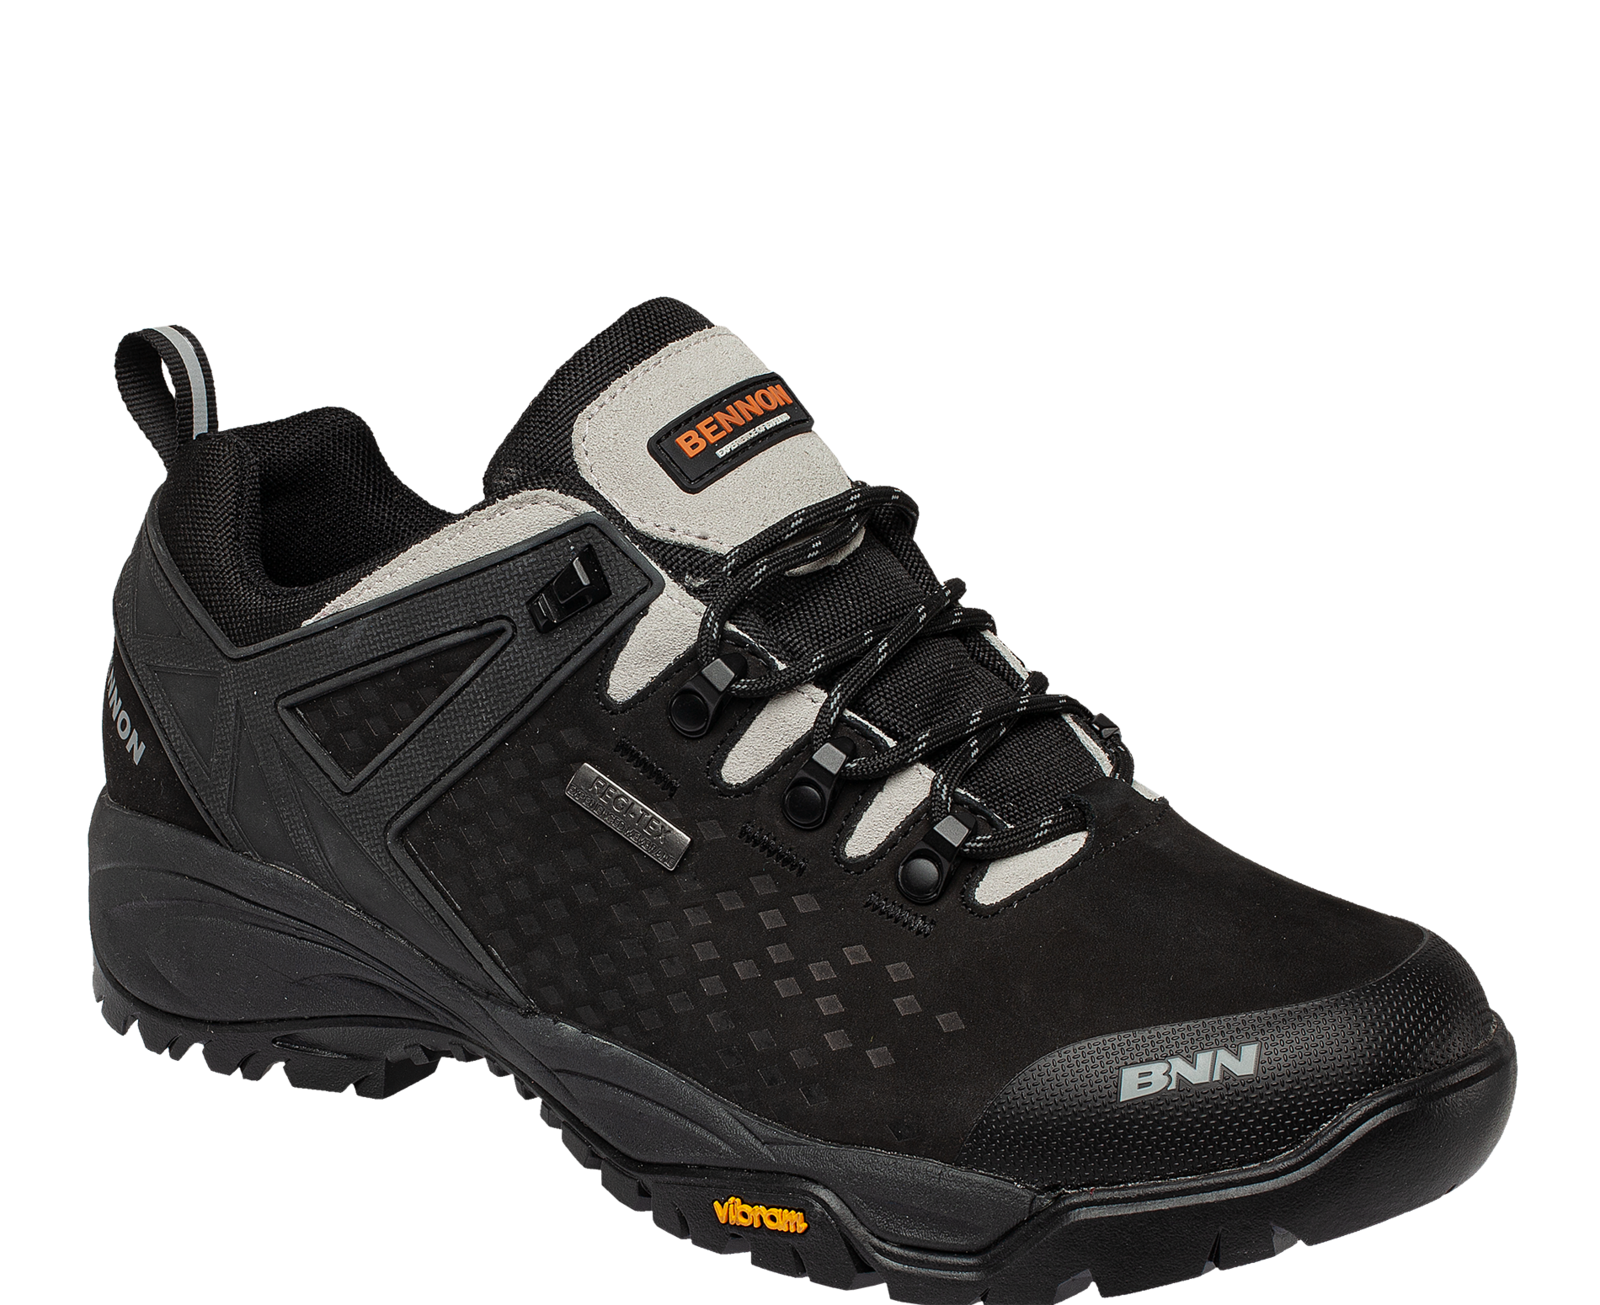 Outdoorová obuv Bennon Recado XTR O2 s membránou - veľkosť: 40, farba: čierna